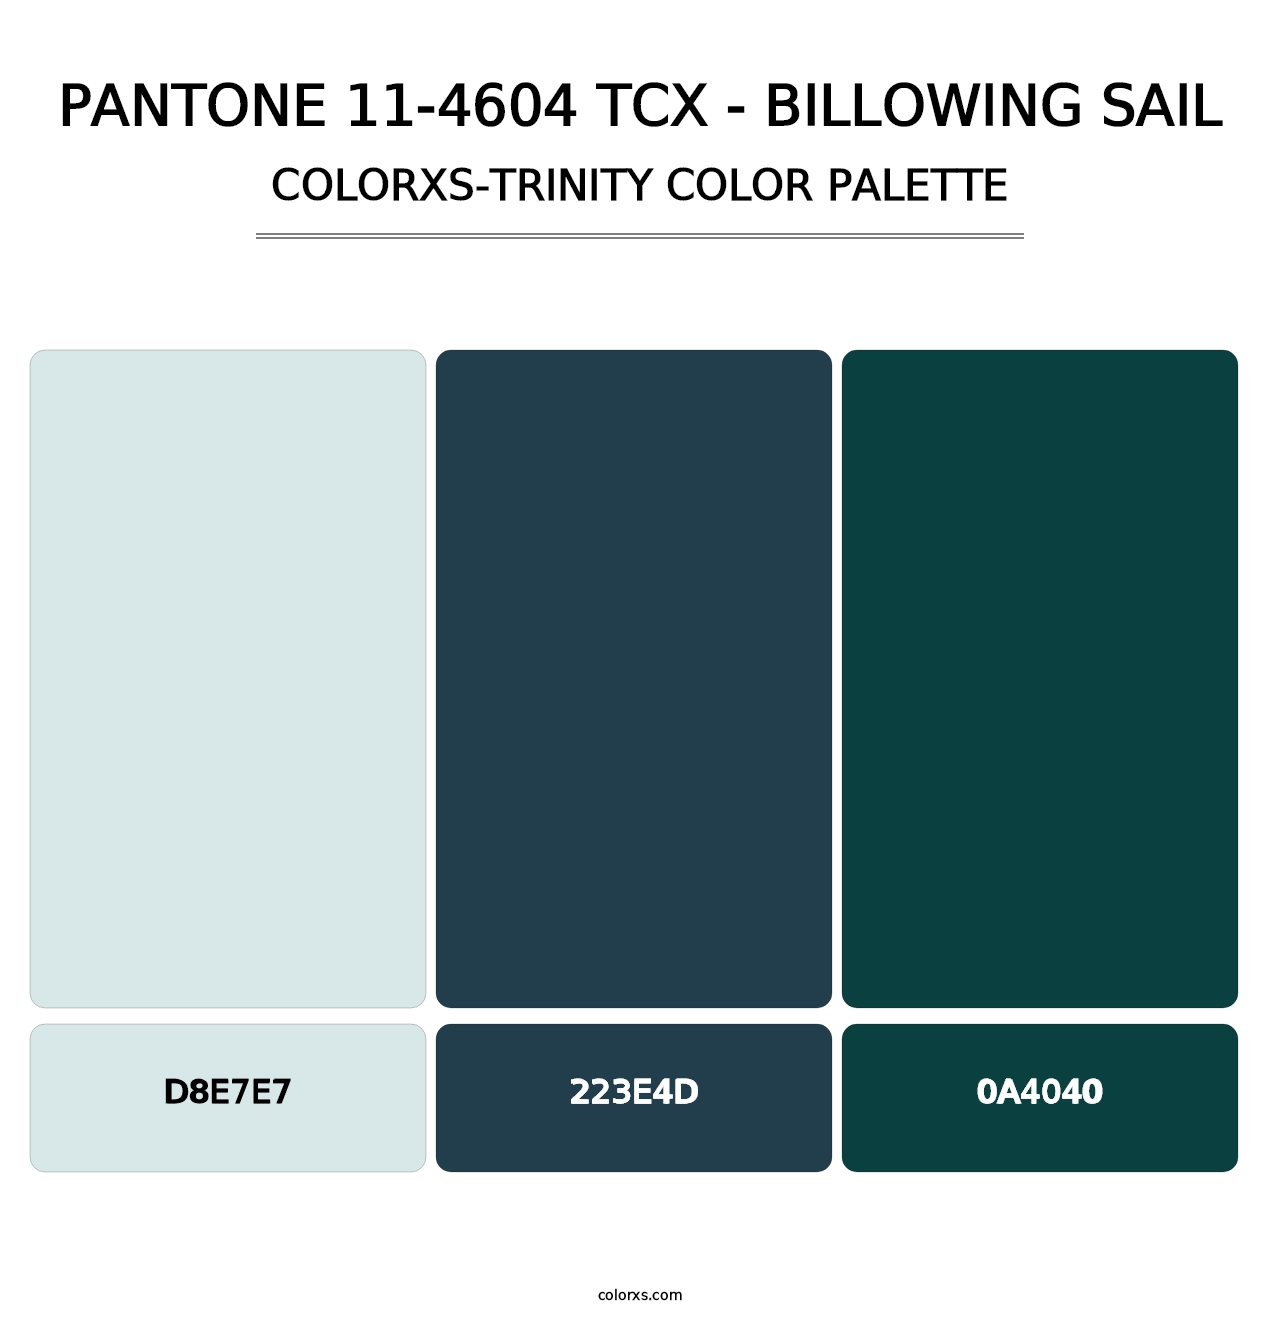 PANTONE 11-4604 TCX - Billowing Sail - Colorxs Trinity Palette